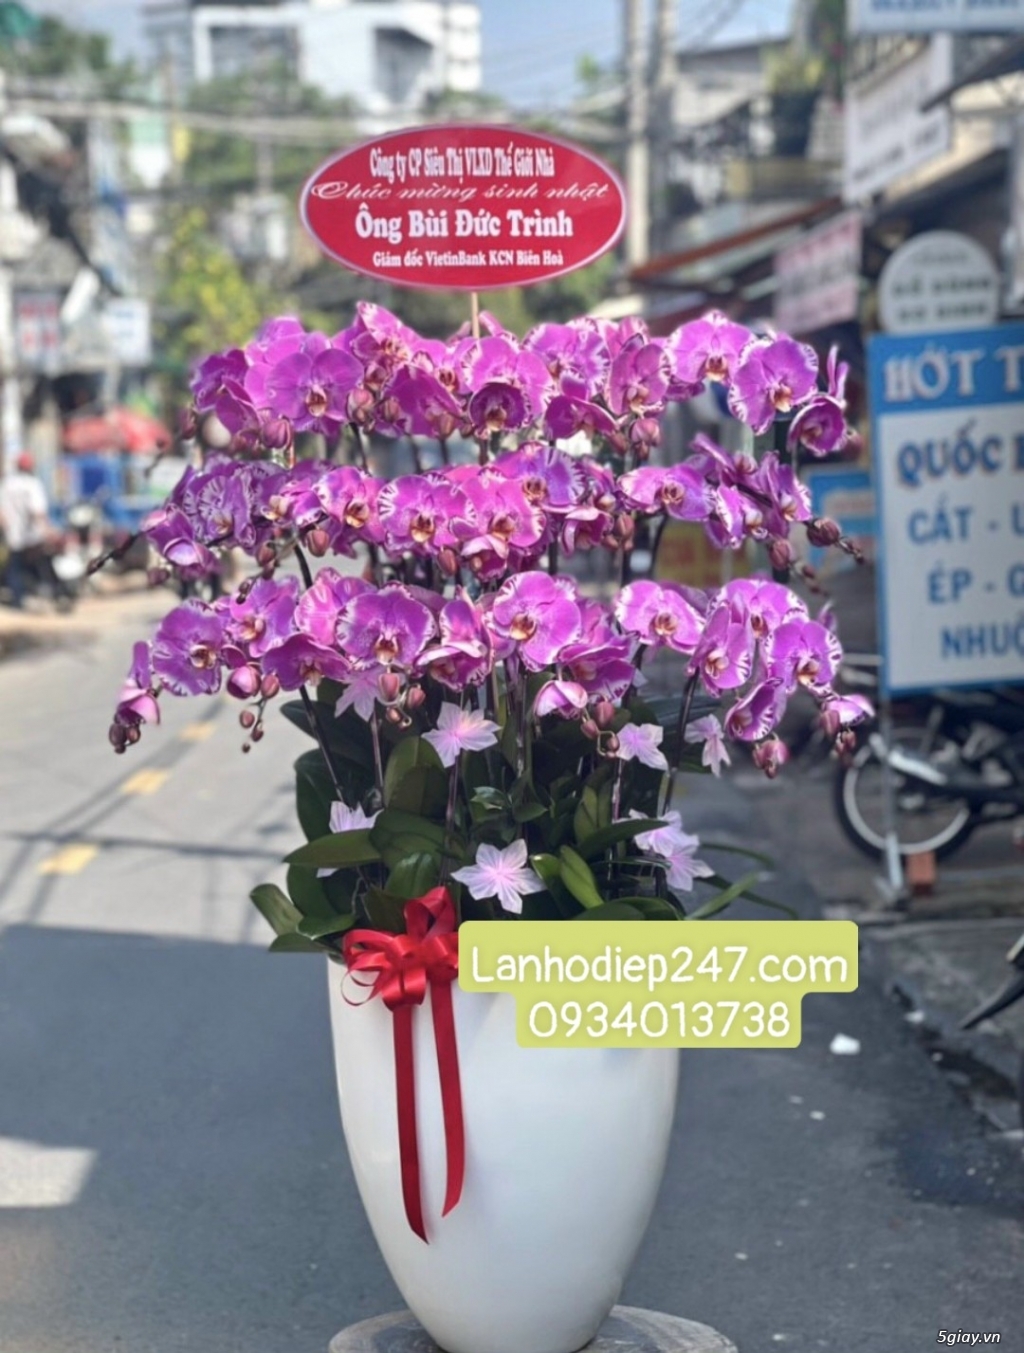 Shop Lan Hồ Điệp cao cấp chất lượng số 1 TPHCM - Hoa Tươi 247 Sài Gòn - 11